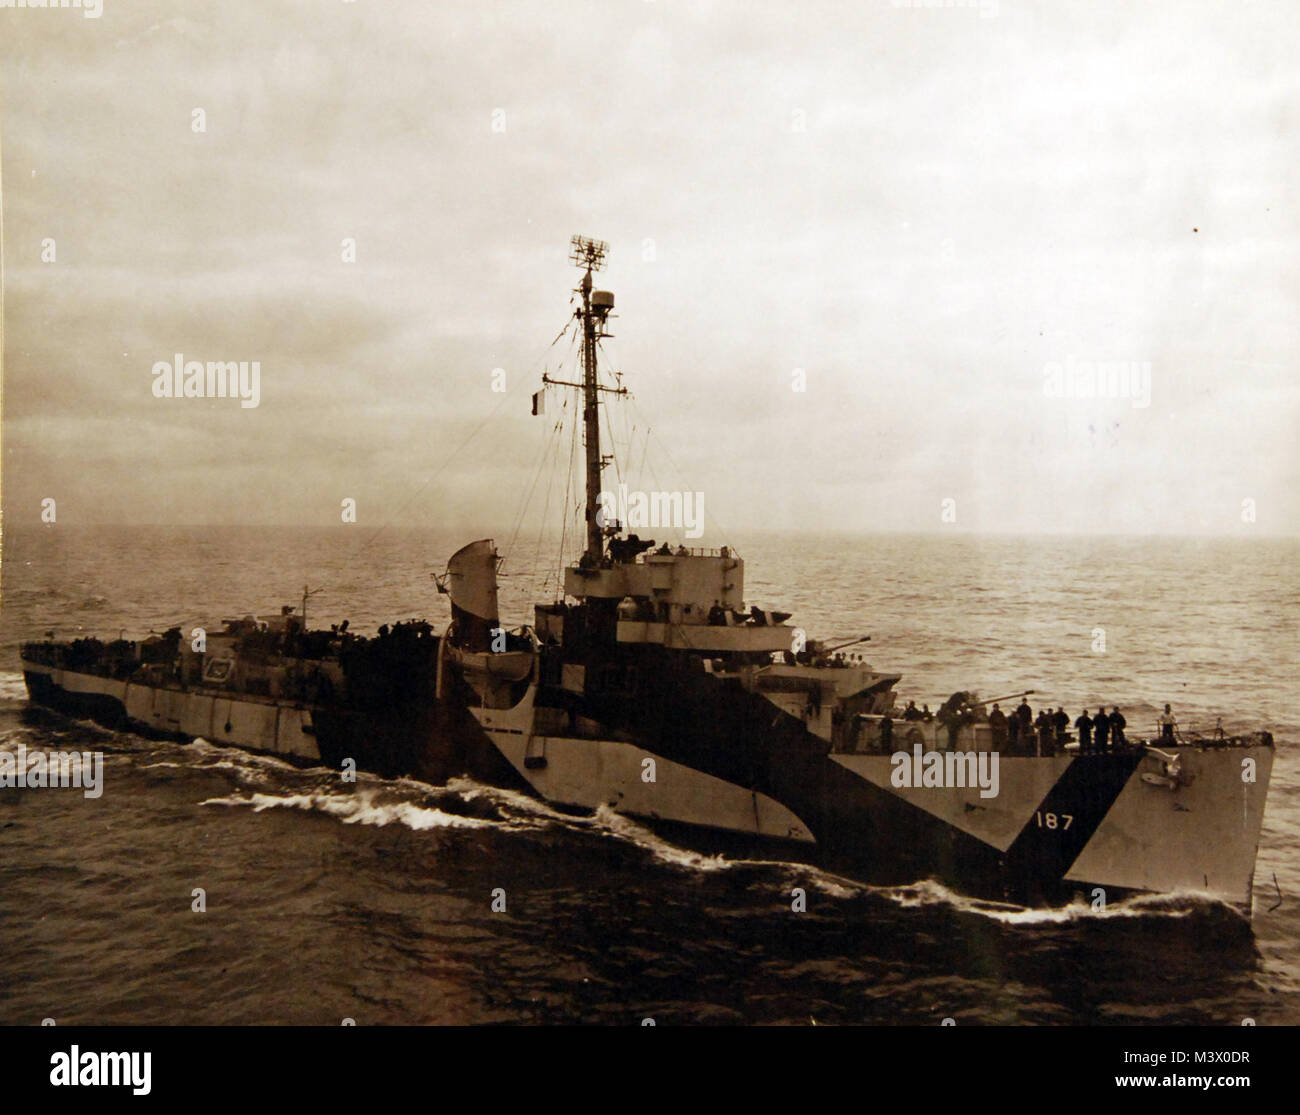 80-G--366251: USS Stern (DE-187) USS-Karte (CVE-11), 26. April 1946 berücksichtigt. Offizielle U.S. Navy Foto, jetzt in den Sammlungen der National Archives. (2018/01/31). 80-G--366251 40008535841 o Stockfoto